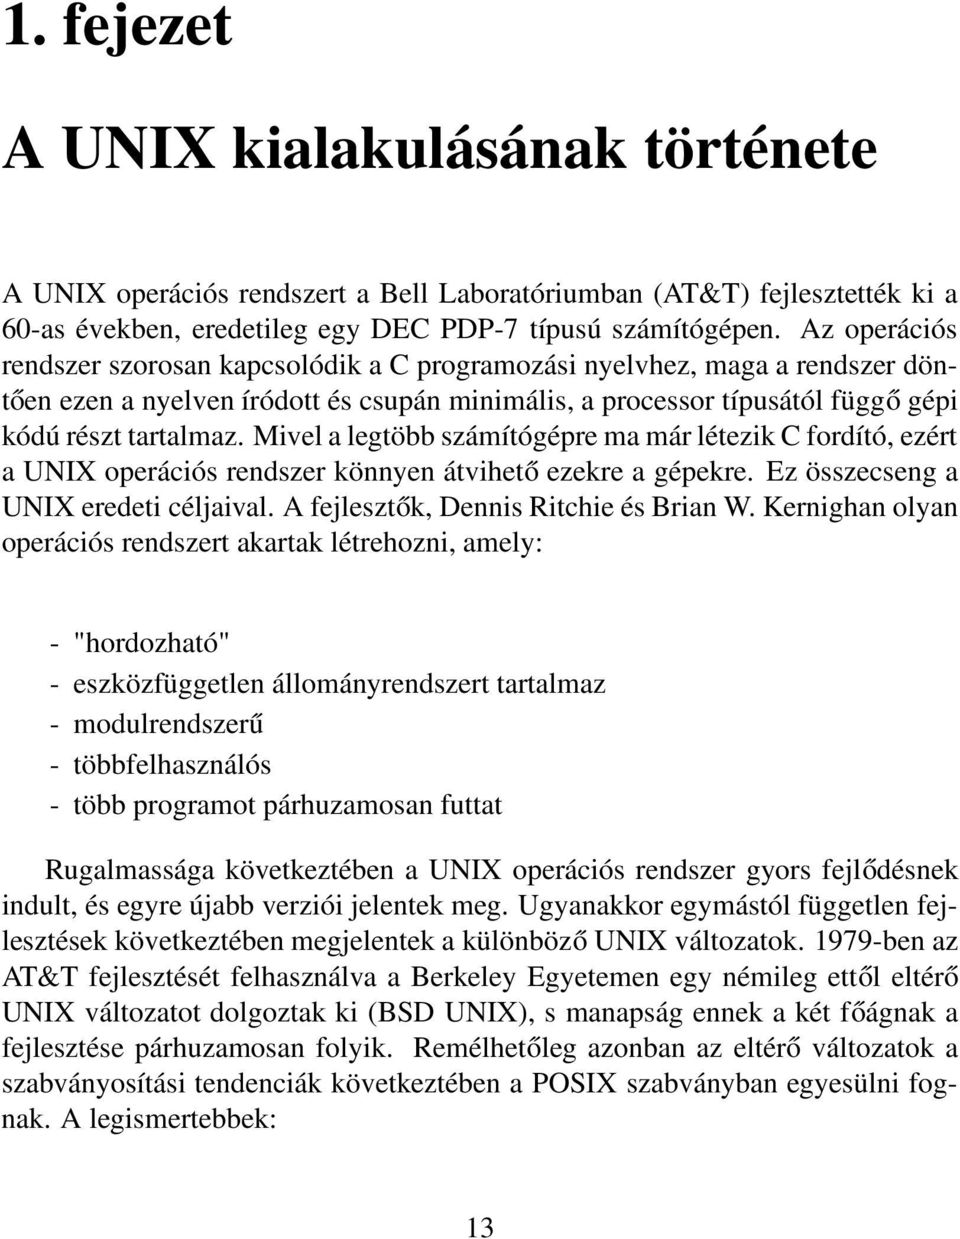 Mivel a legtöbb számítógépre ma már létezik C fordító, ezért a UNIX operációs rendszer könnyen átvihető ezekre a gépekre. Ez összecseng a UNIX eredeti céljaival.